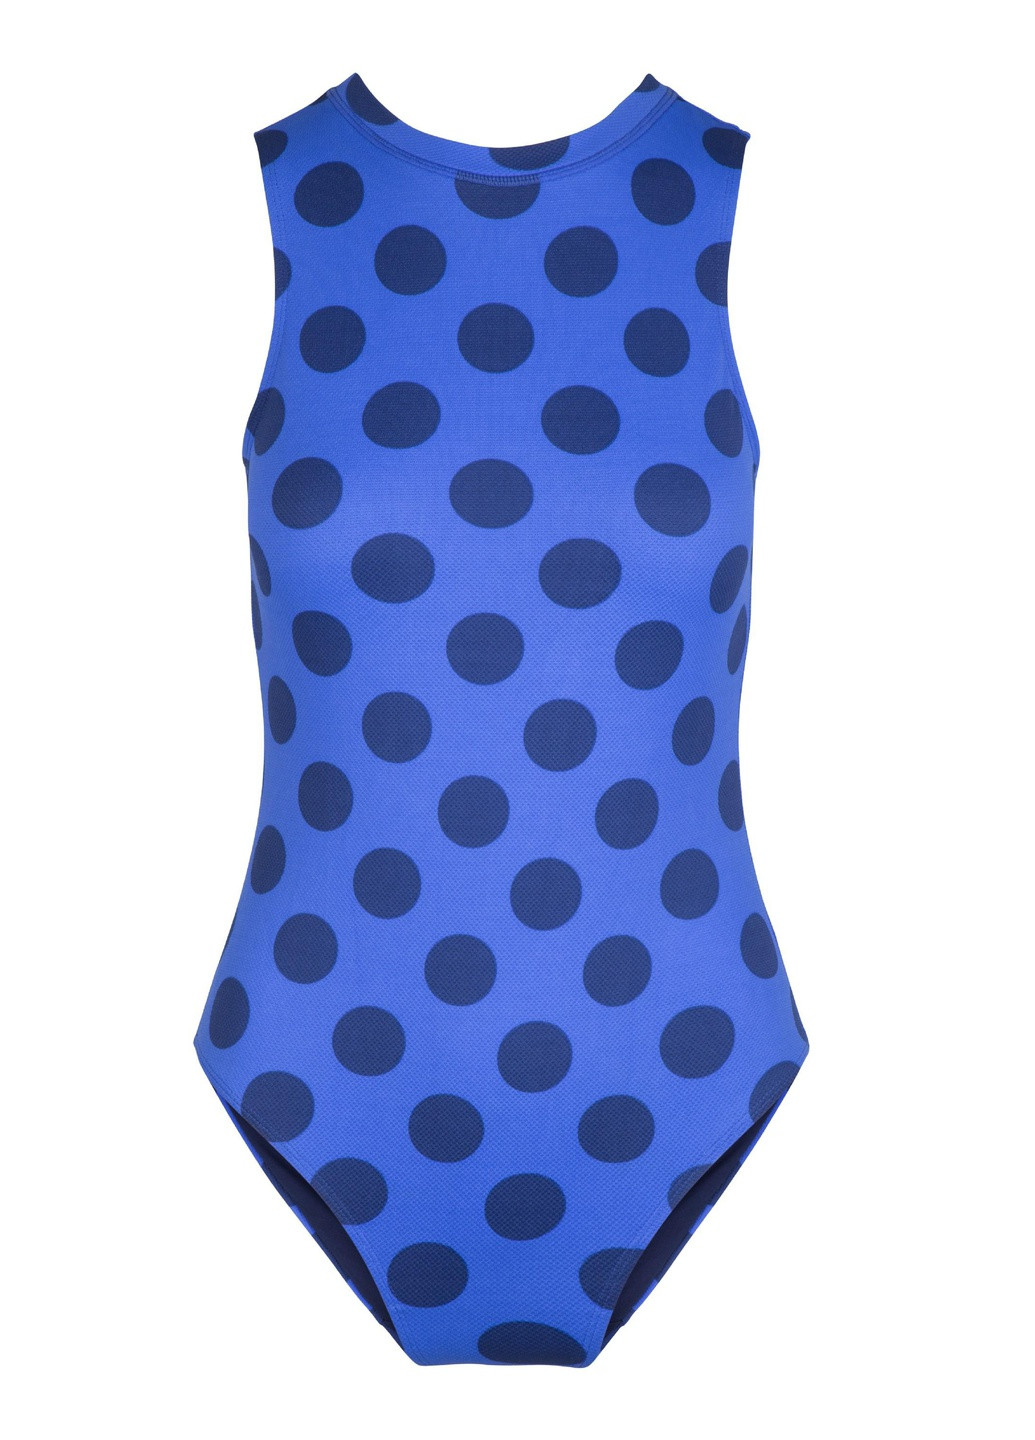 Синий демисезонный купальник женский цельный 4109ss слитный Lingadore